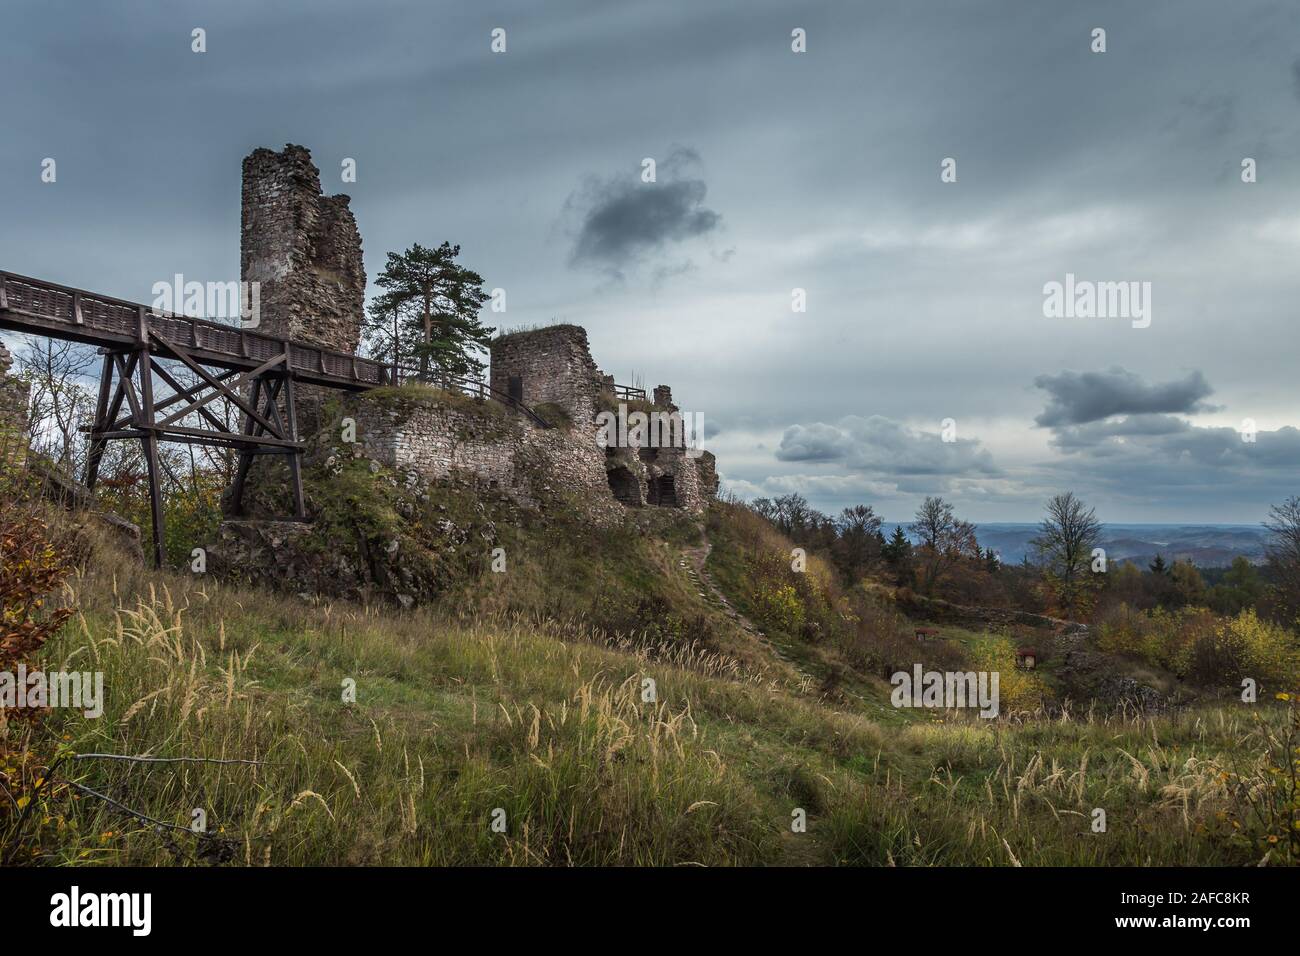 Zubstejn ruines du château construit au 13e siècle. Il se dresse sur une colline au-dessus du village Pivonice en République tchèque. Jour couvert. Également connu sous le nom de Banque D'Images